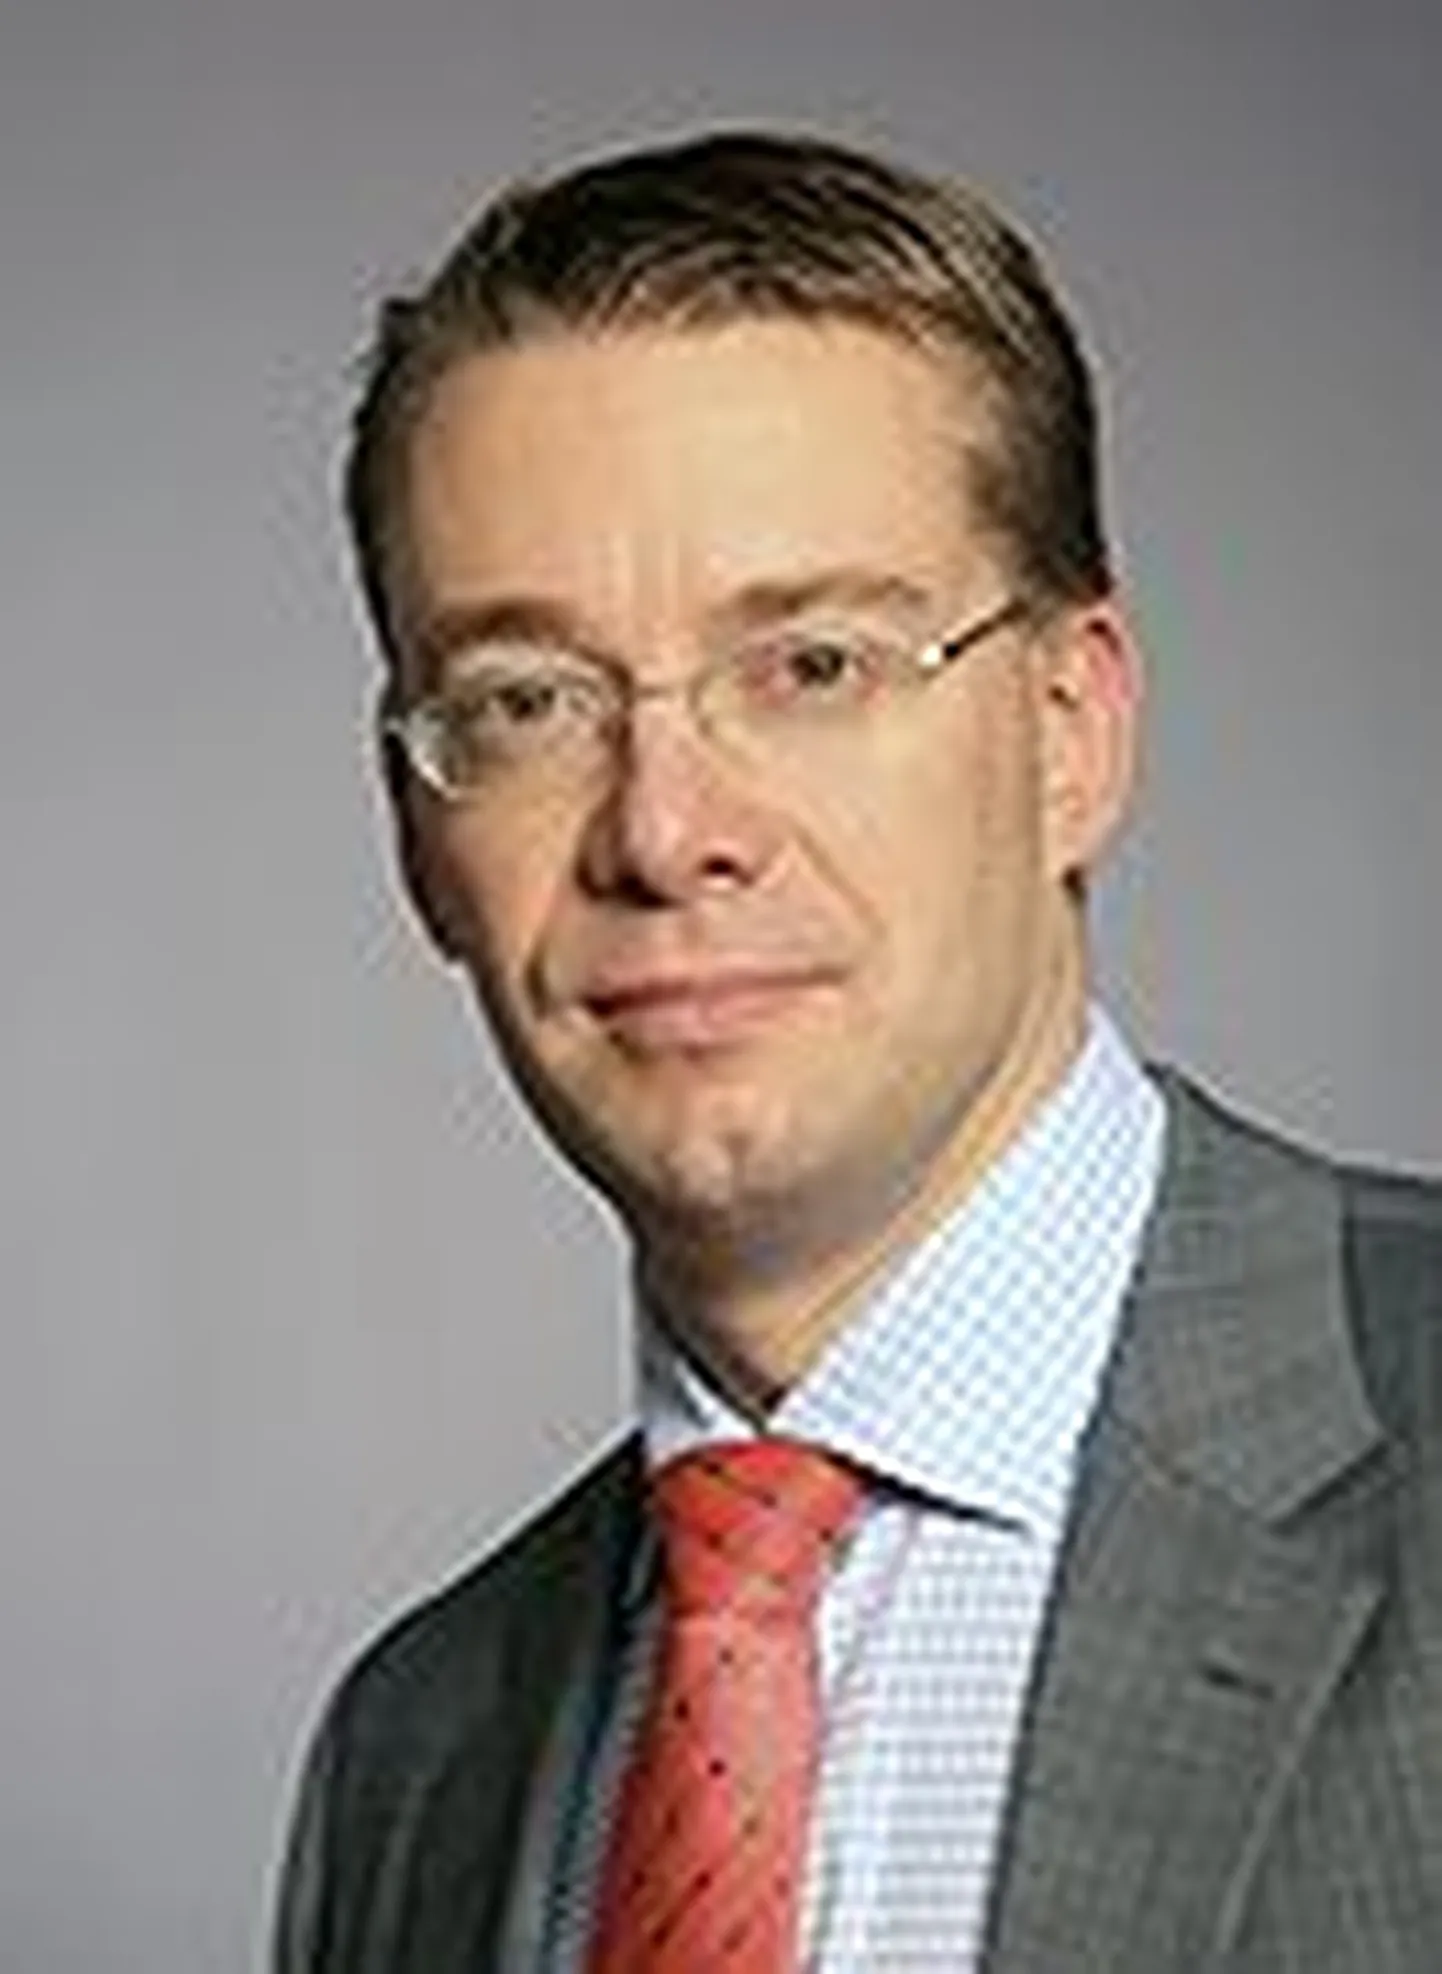 Minister Stefan Wallin